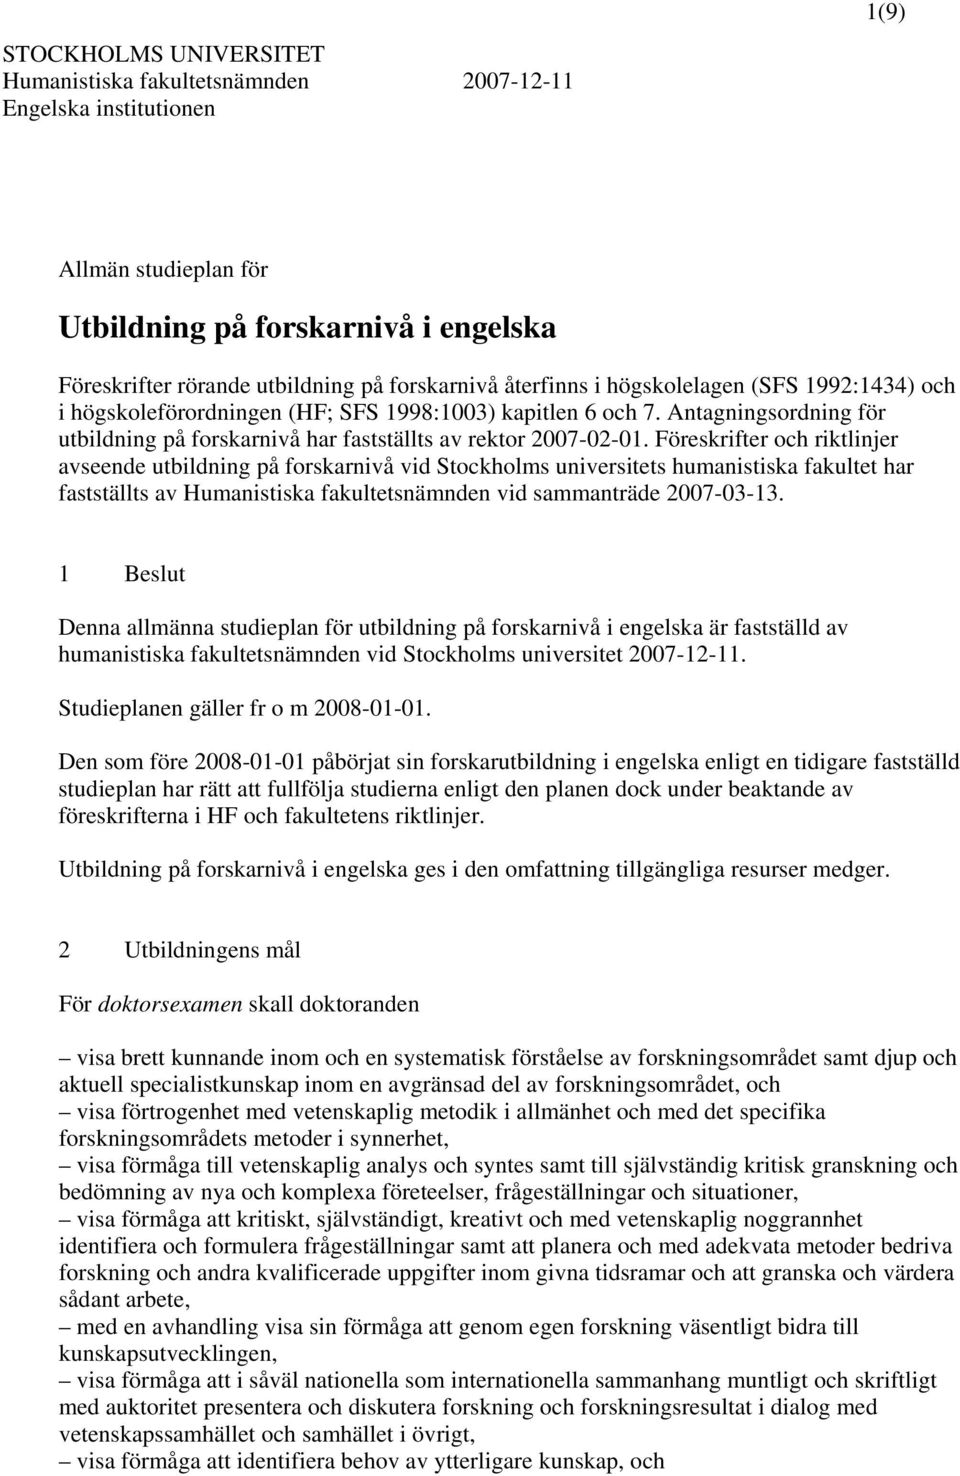 Föreskrifter och riktlinjer avseende utbildning på forskarnivå vid Stockholms universitets humanistiska fakultet har fastställts av Humanistiska fakultetsnämnden vid sammanträde 2007-03-13.